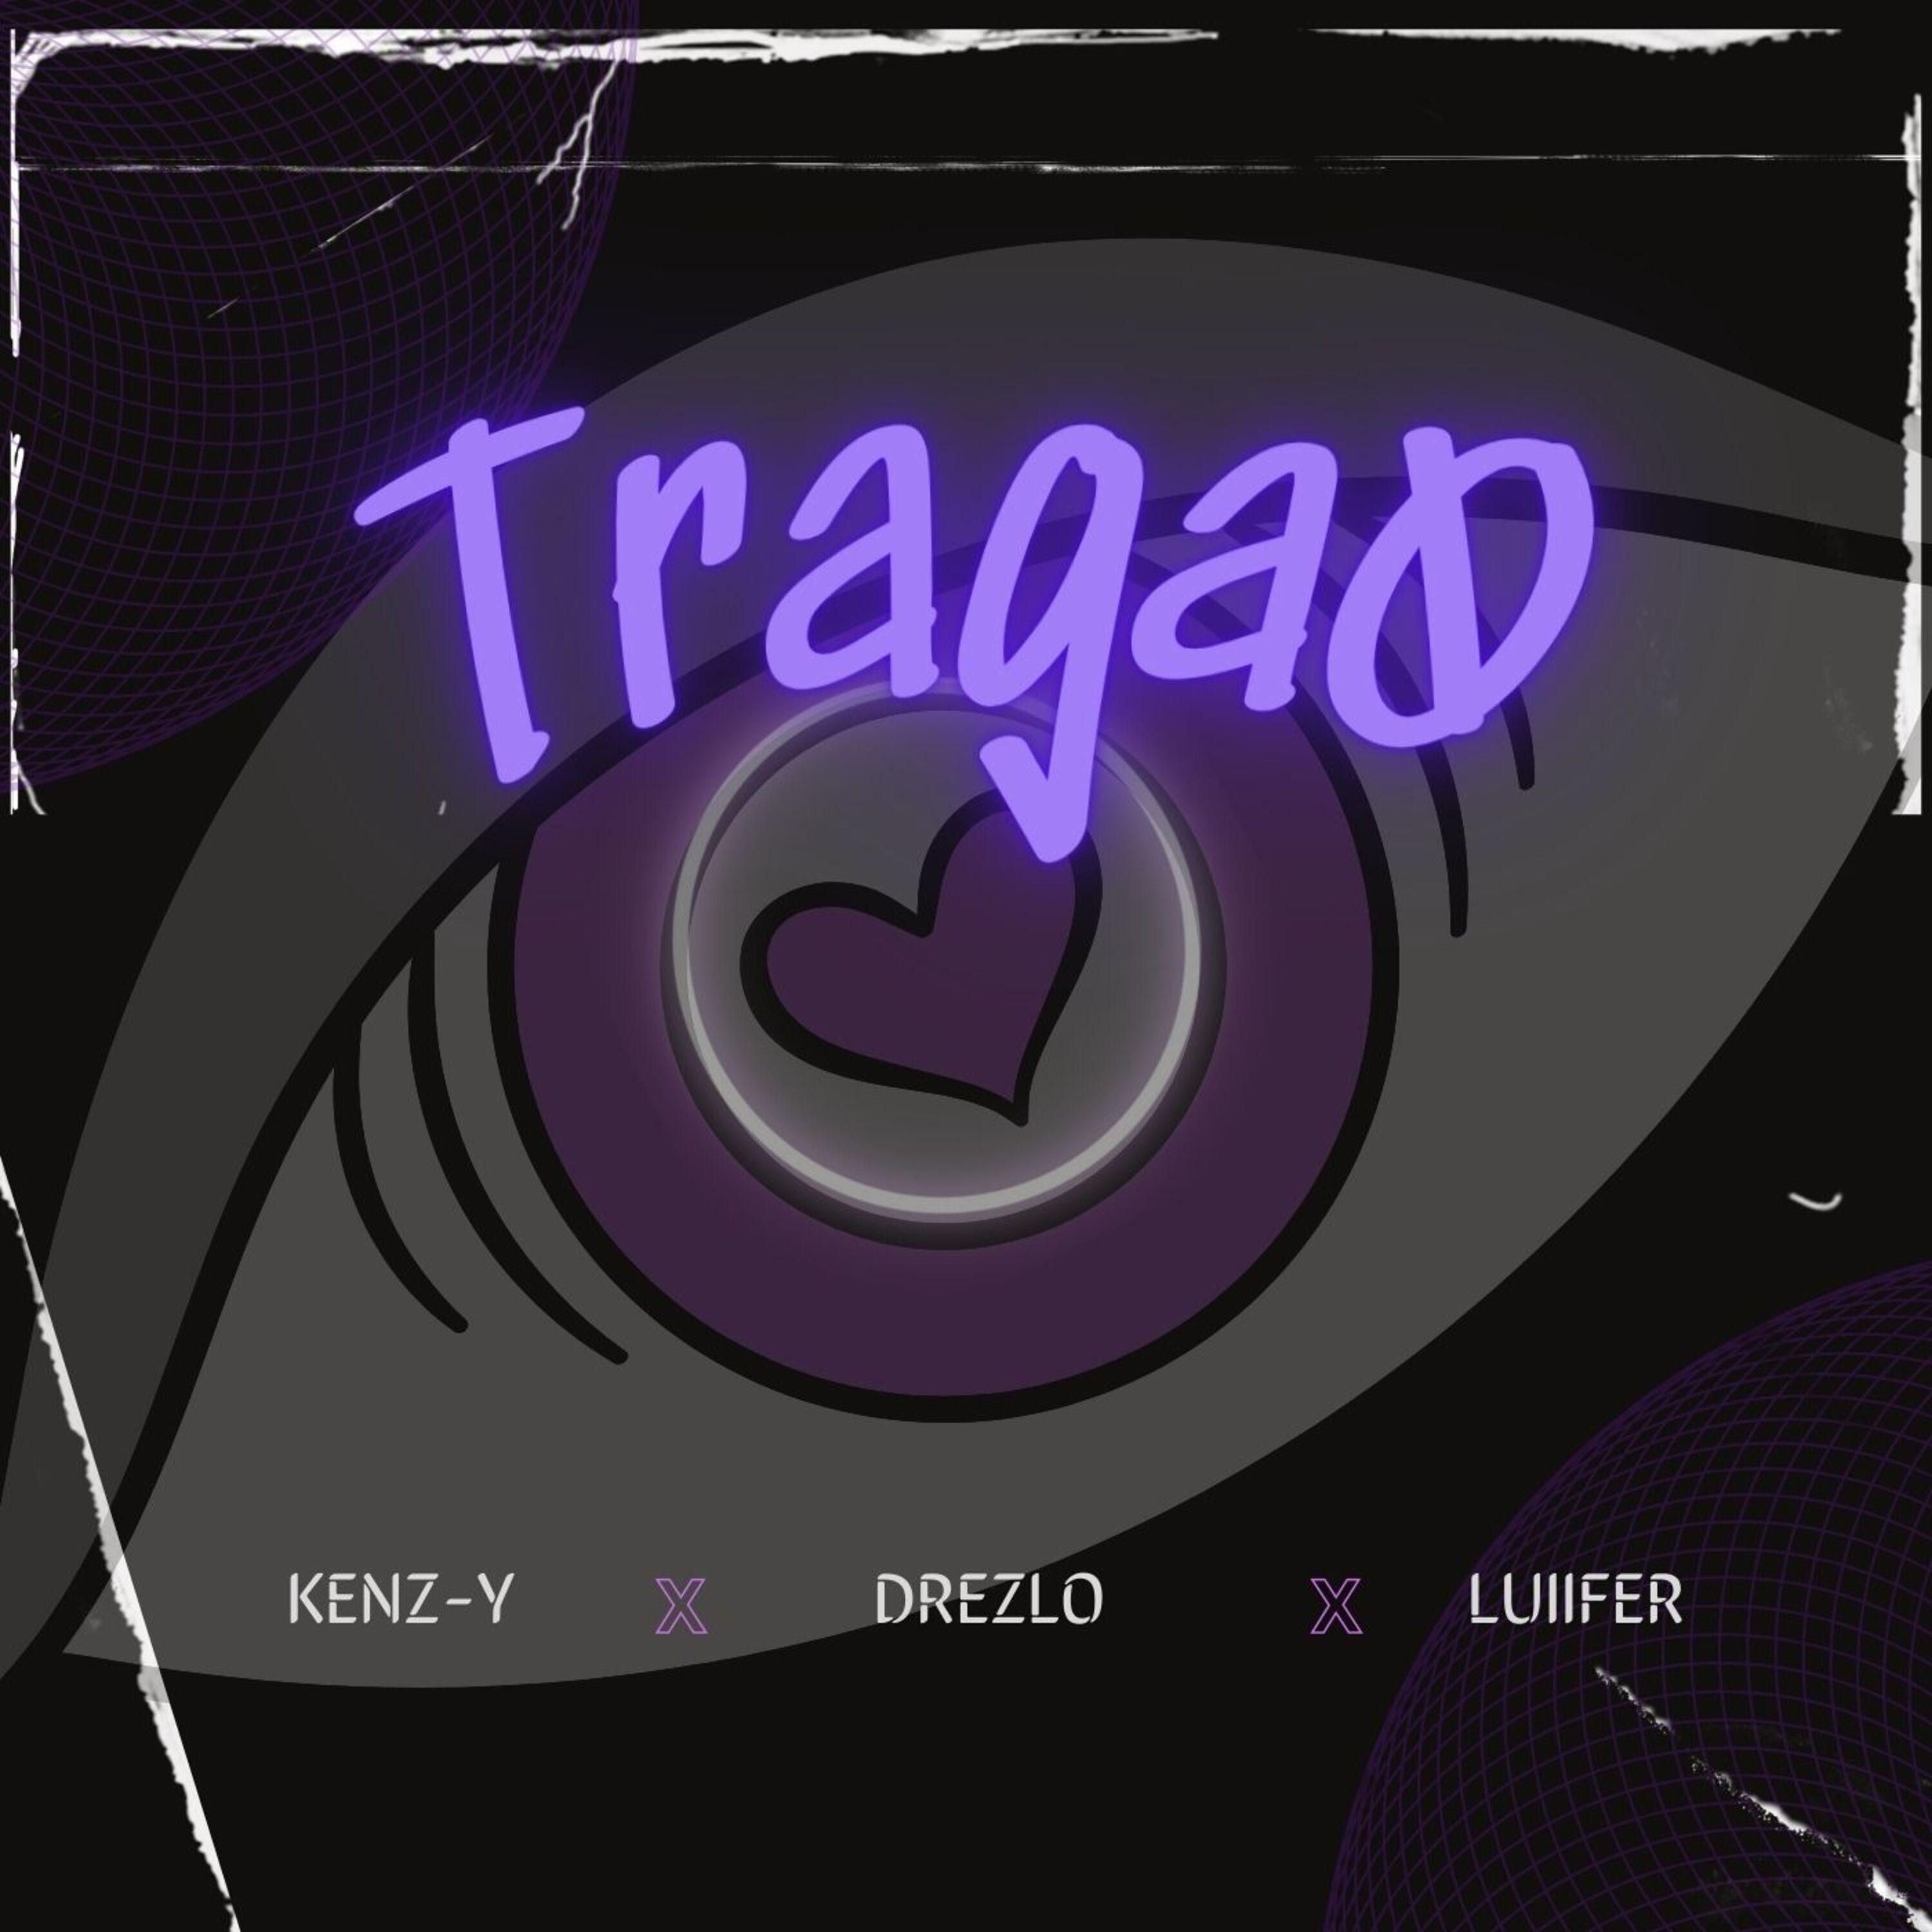 Постер альбома Tragao